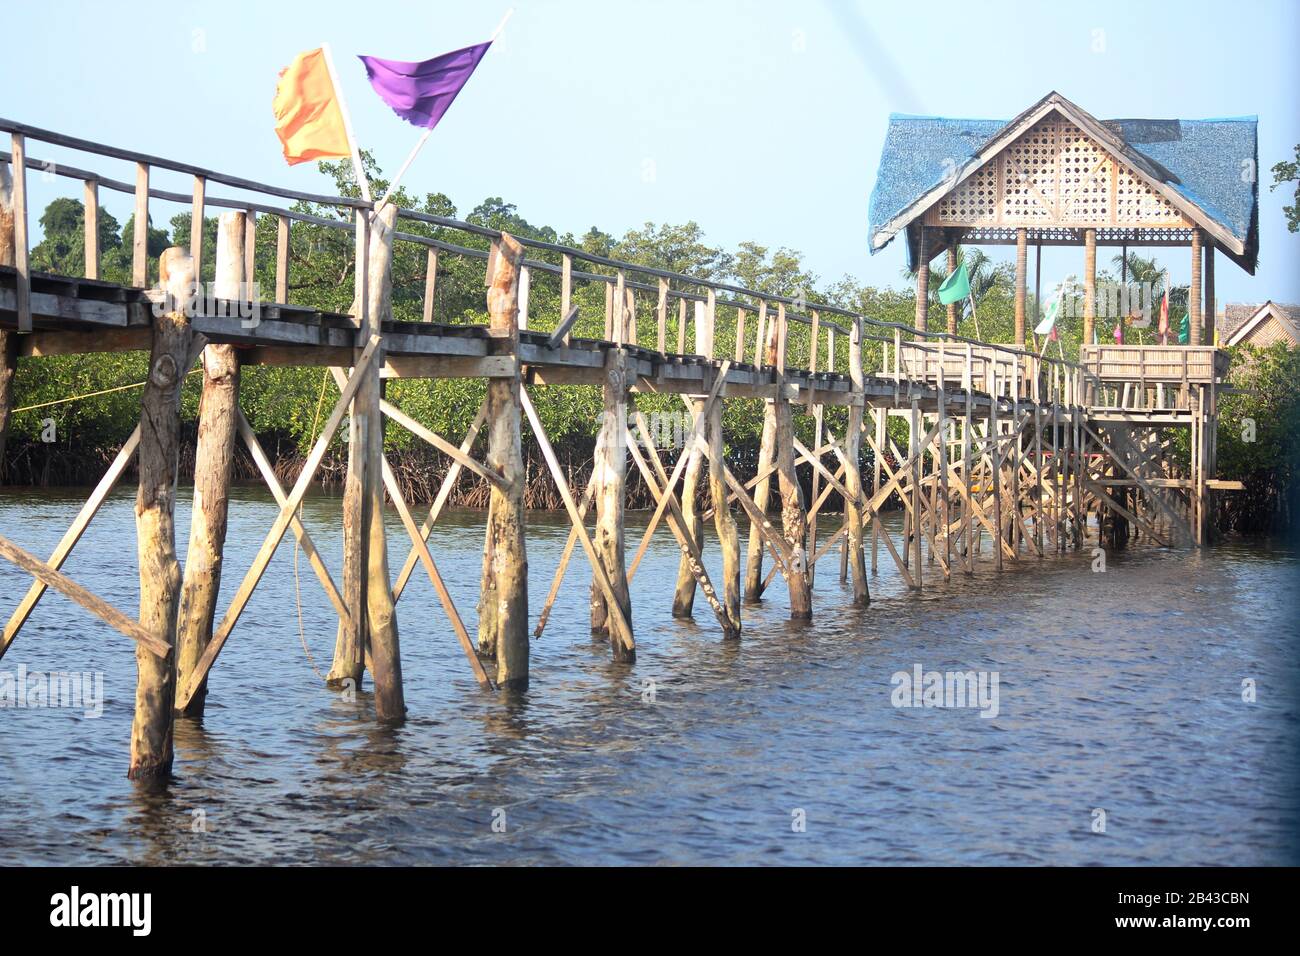 Wooden walkway on long poles at Britania Islands, Surigao del Sur, Philippines. Stock Photo